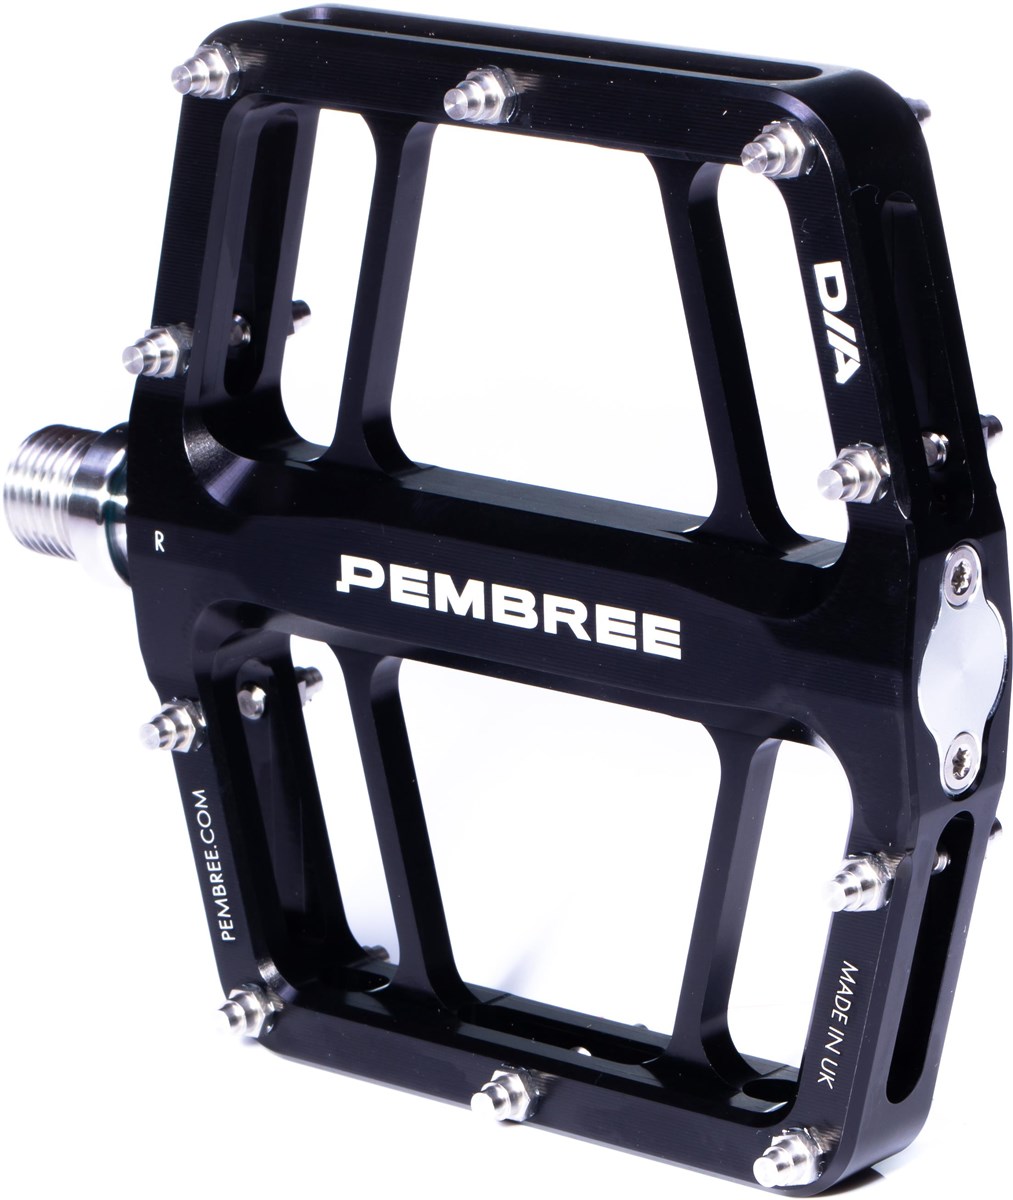 Pembree D2A Pedals product image